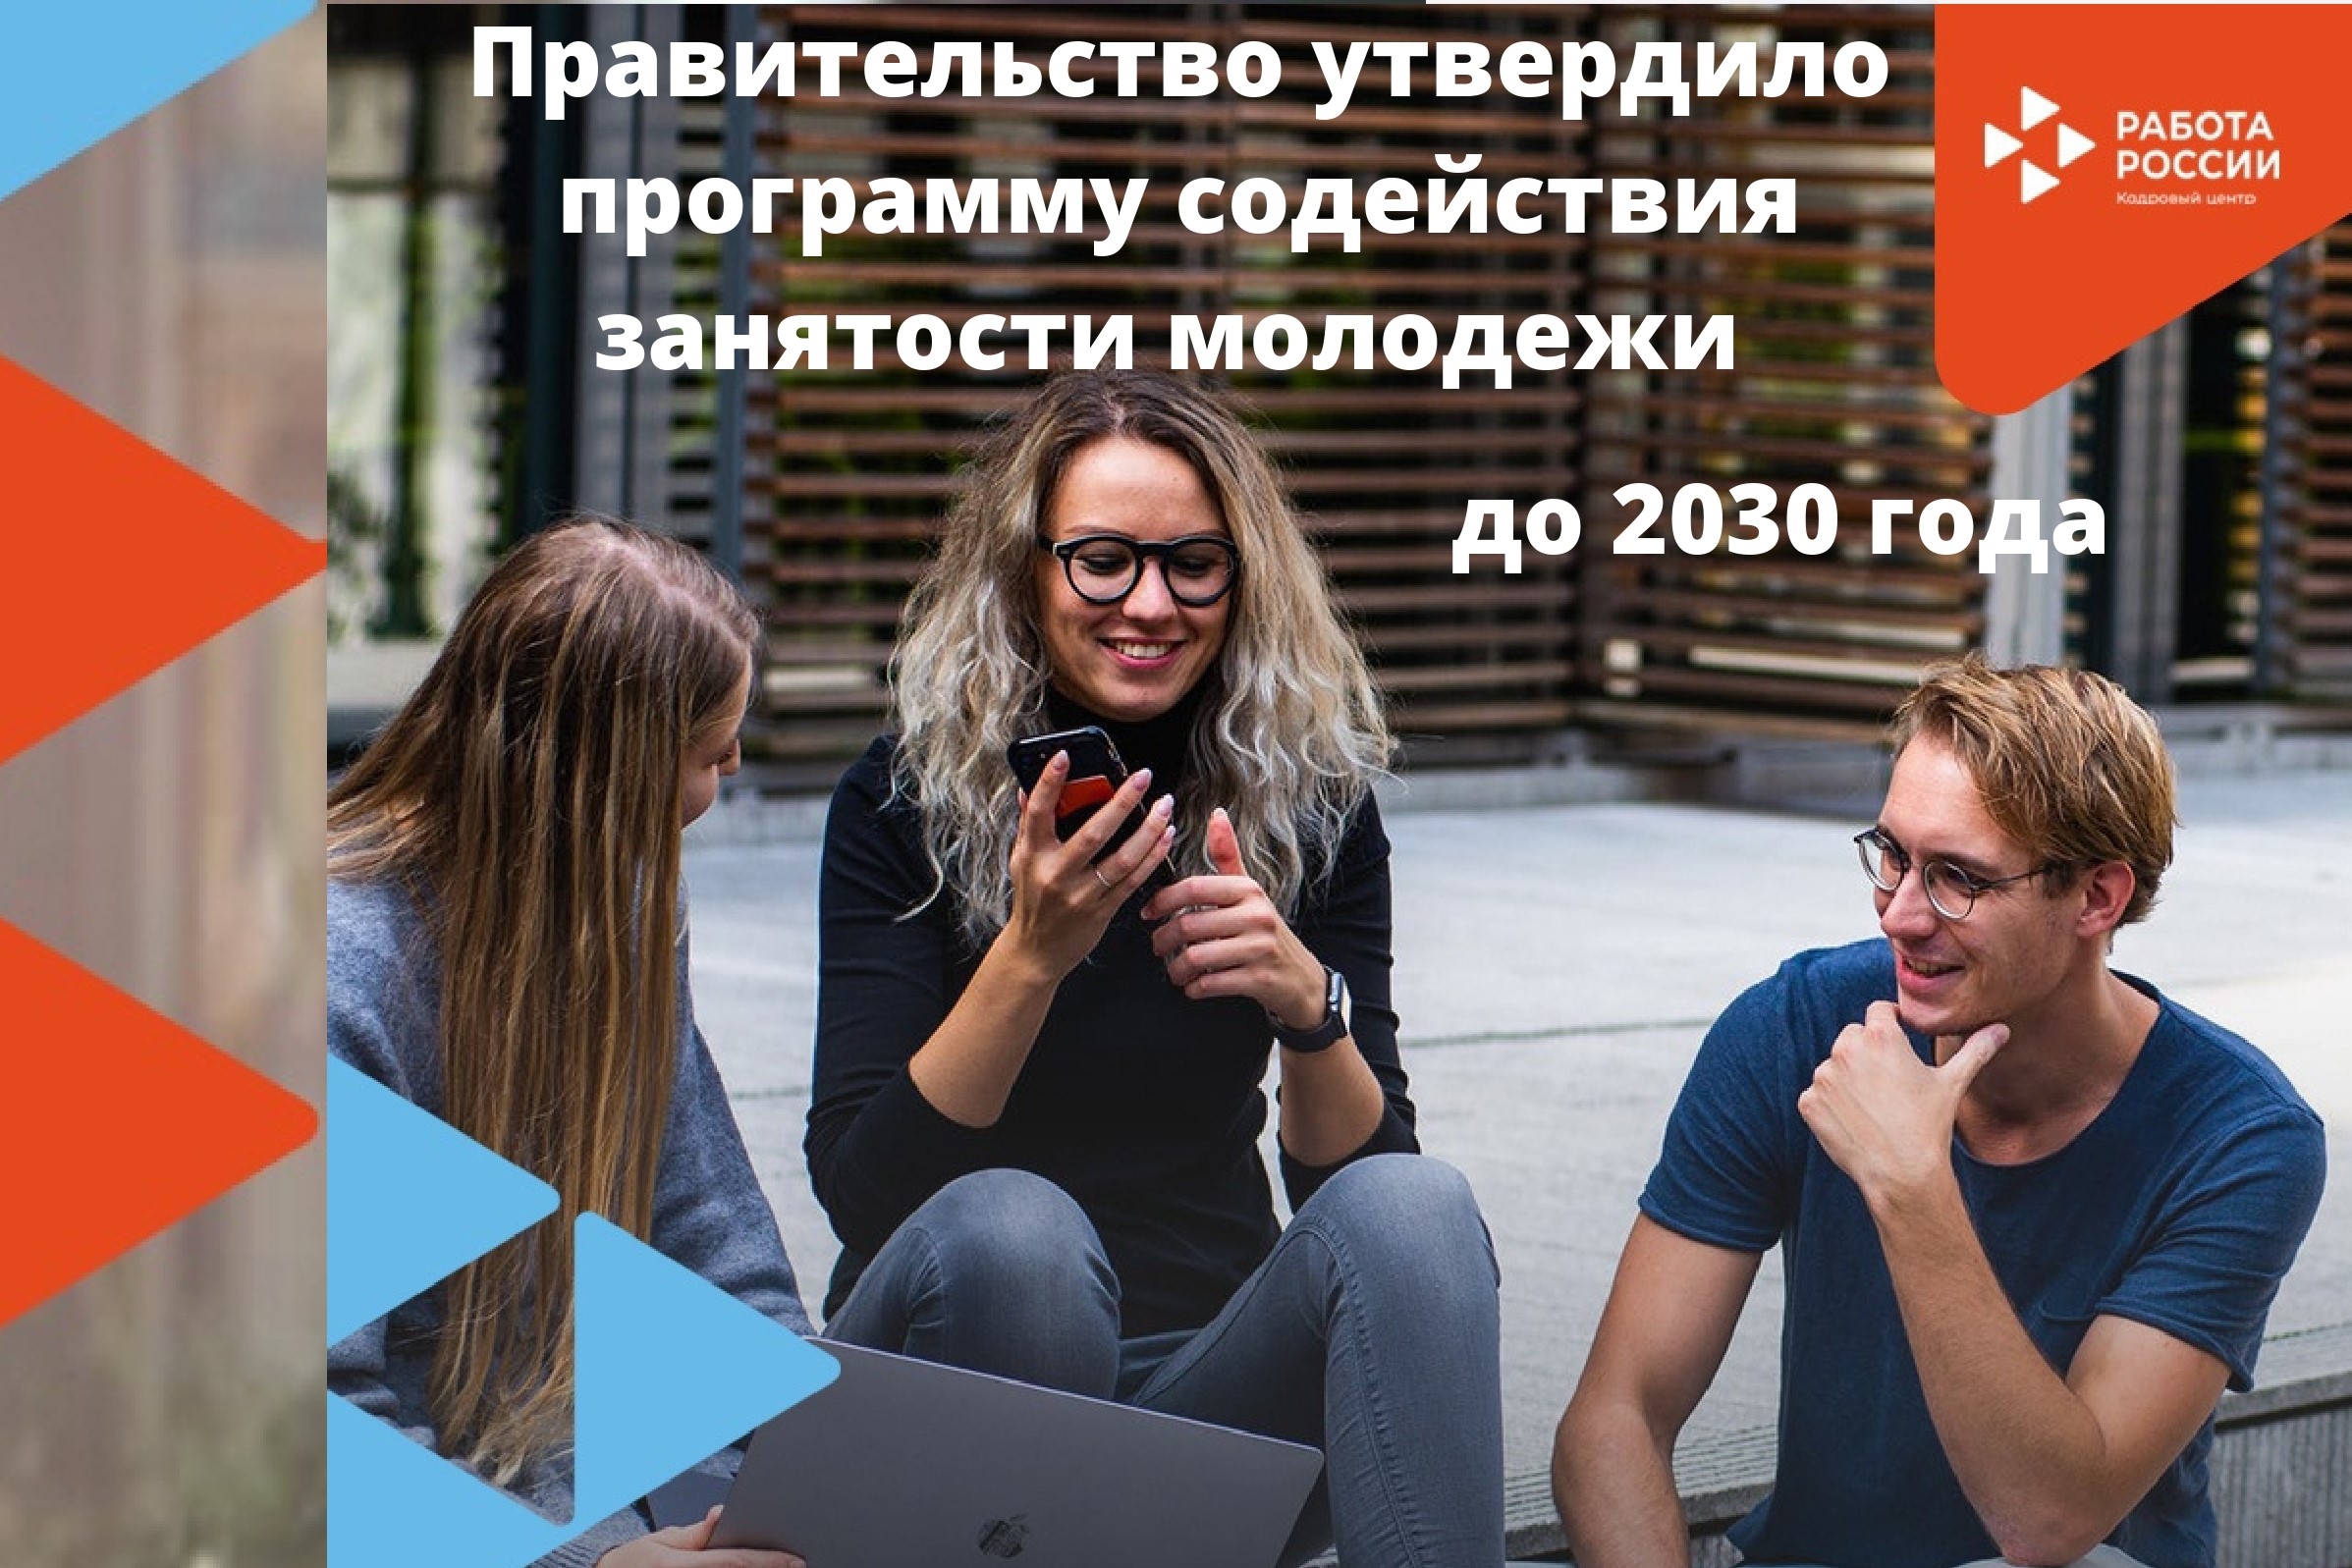 Правительство РФ утвердило программу содействия занятости молодежи до 2030 года